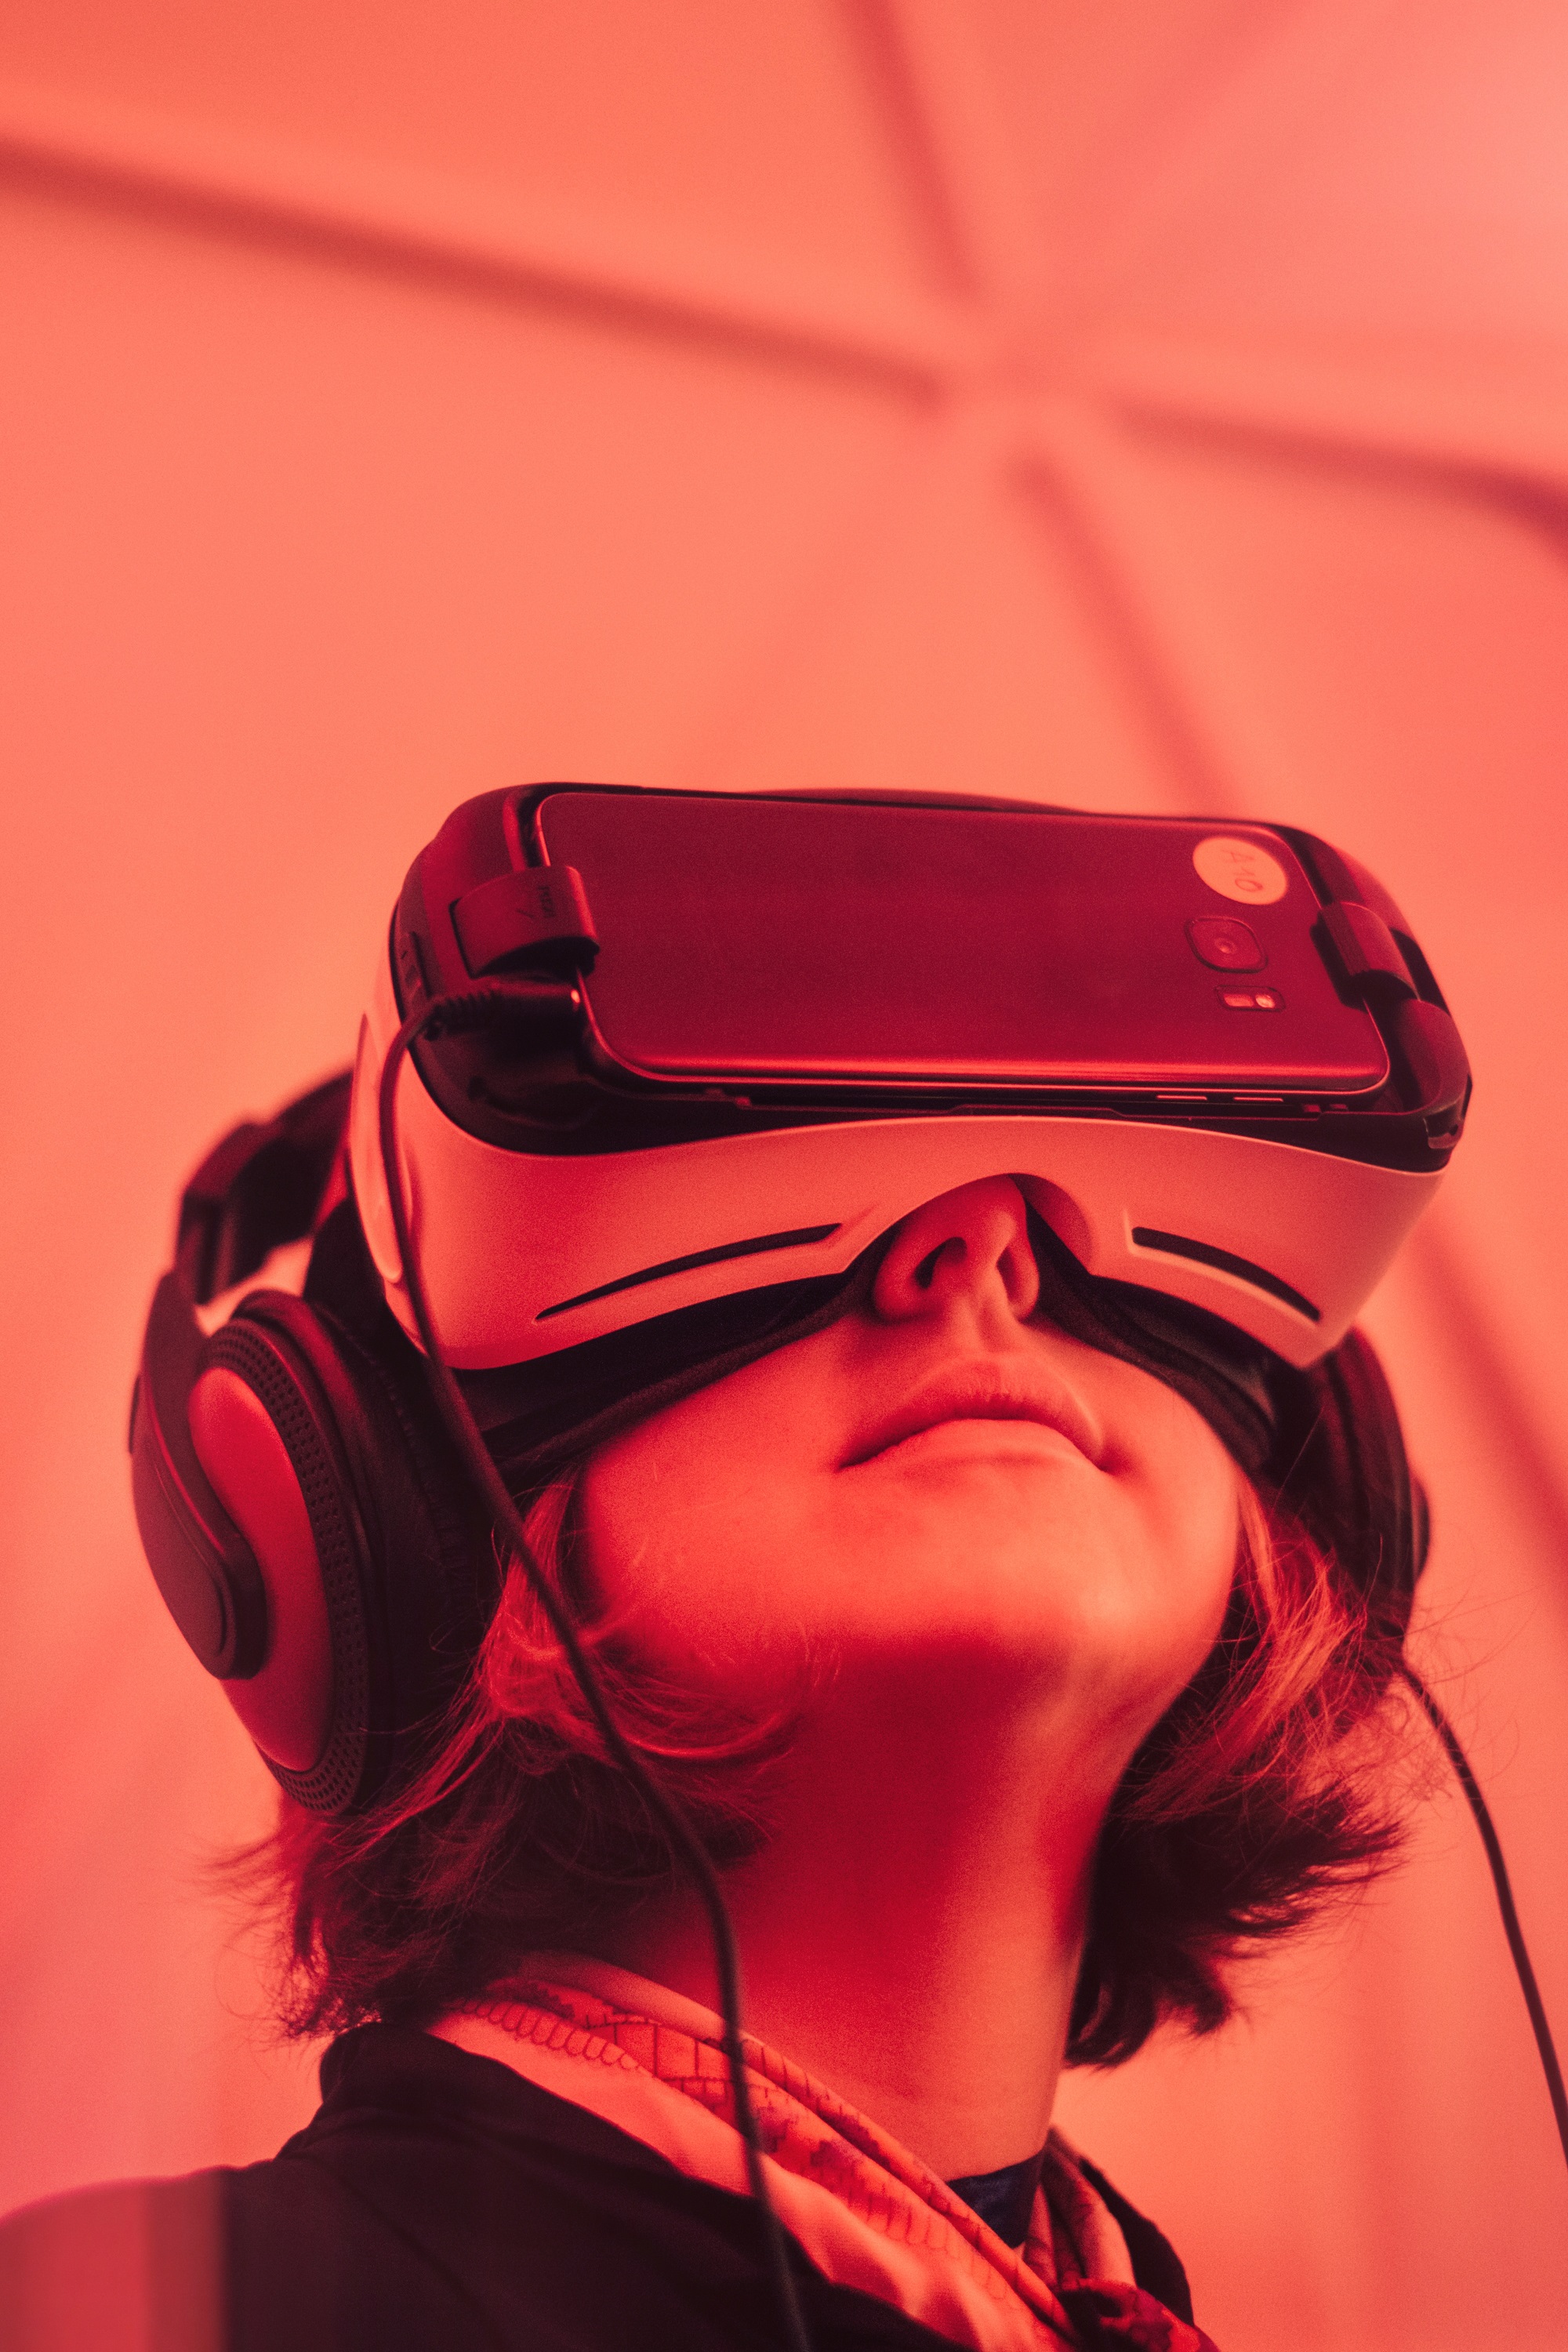 Bild einer Frau, die eine Virtual Reality Brille trägt mit rotem Licht.